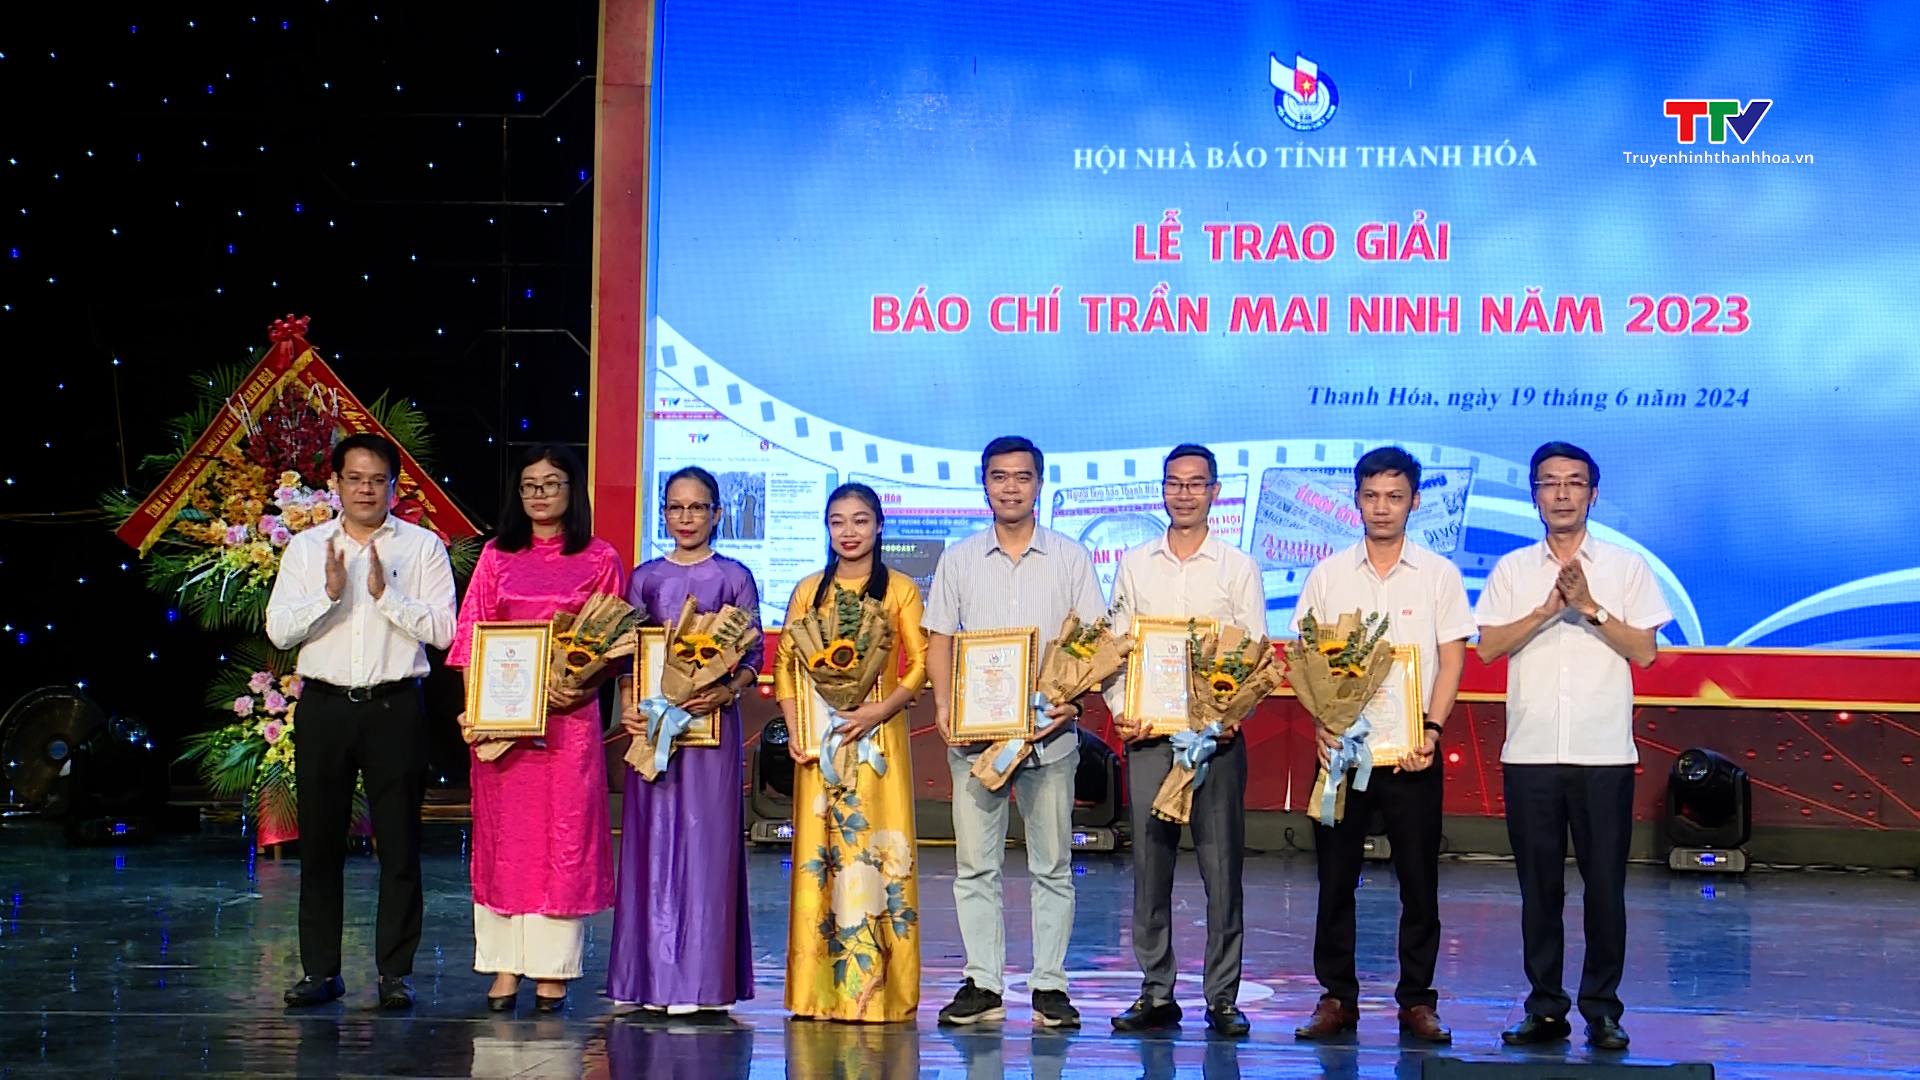 Kỷ niệm 99 năm Ngày Báo chí cách mạng Việt Nam và trao Giải báo chí Trần Mai Ninh năm 2023- Ảnh 8.